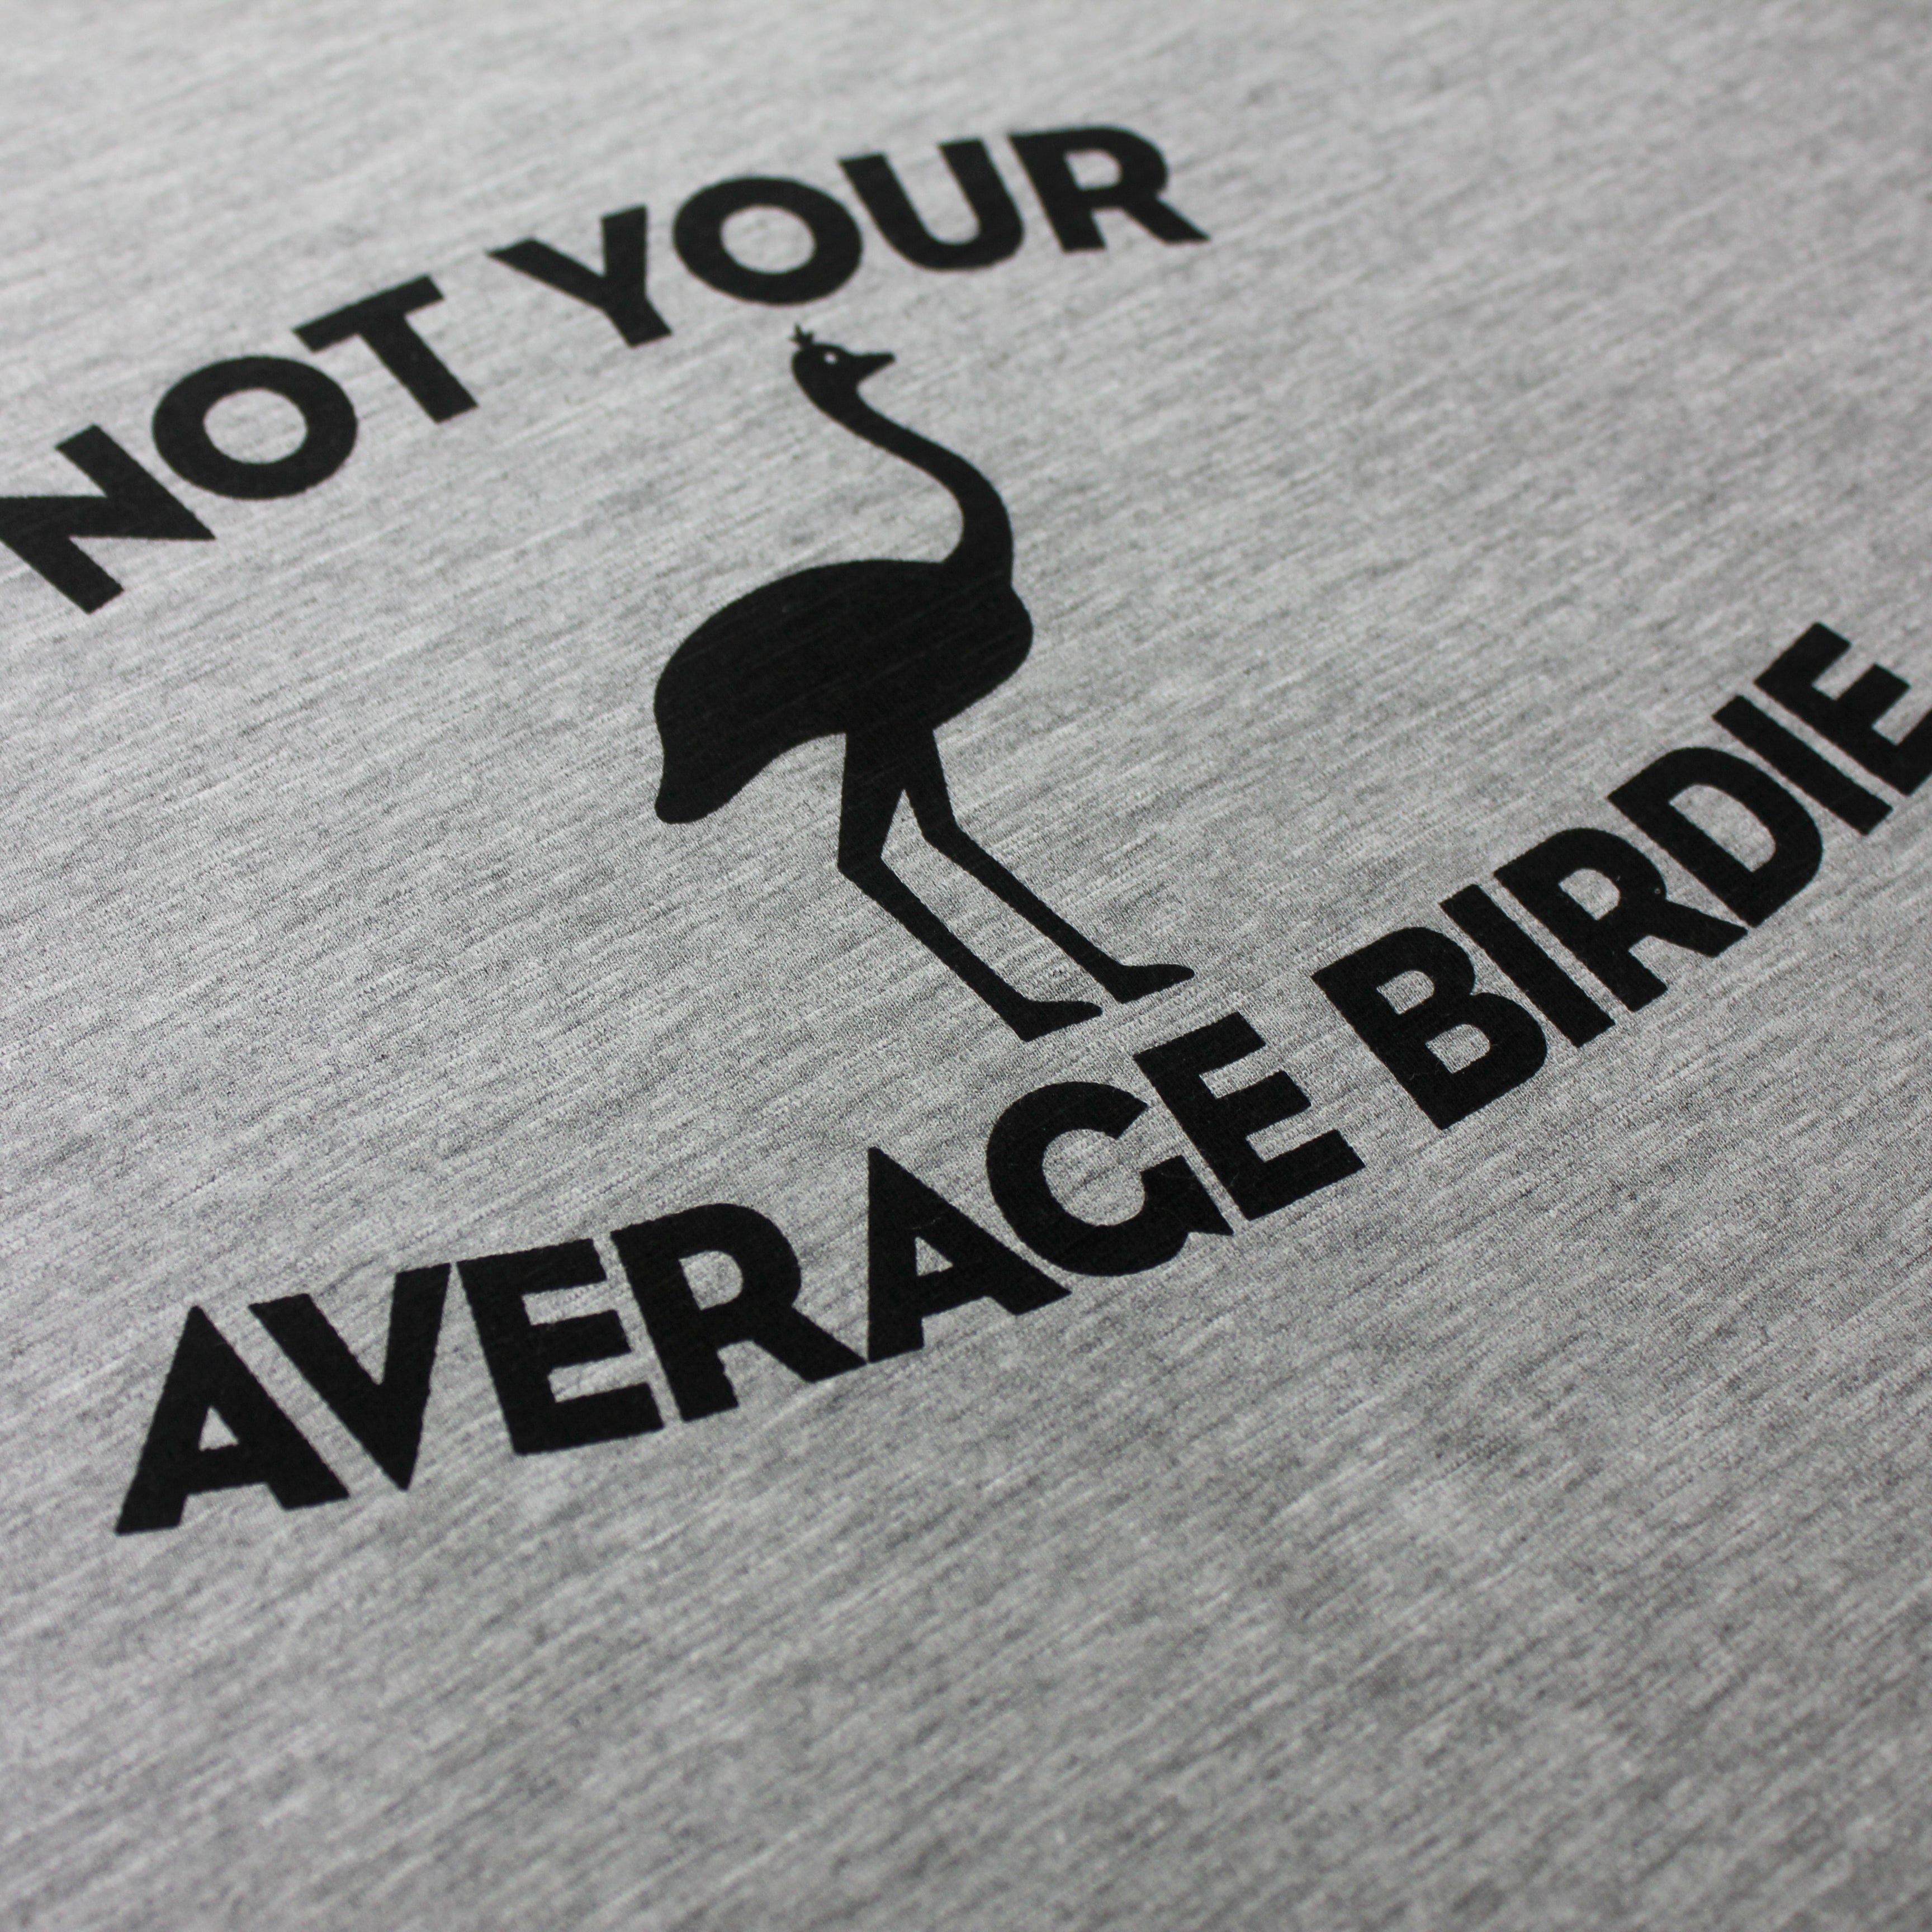 Not Your Average Birdie - Gray